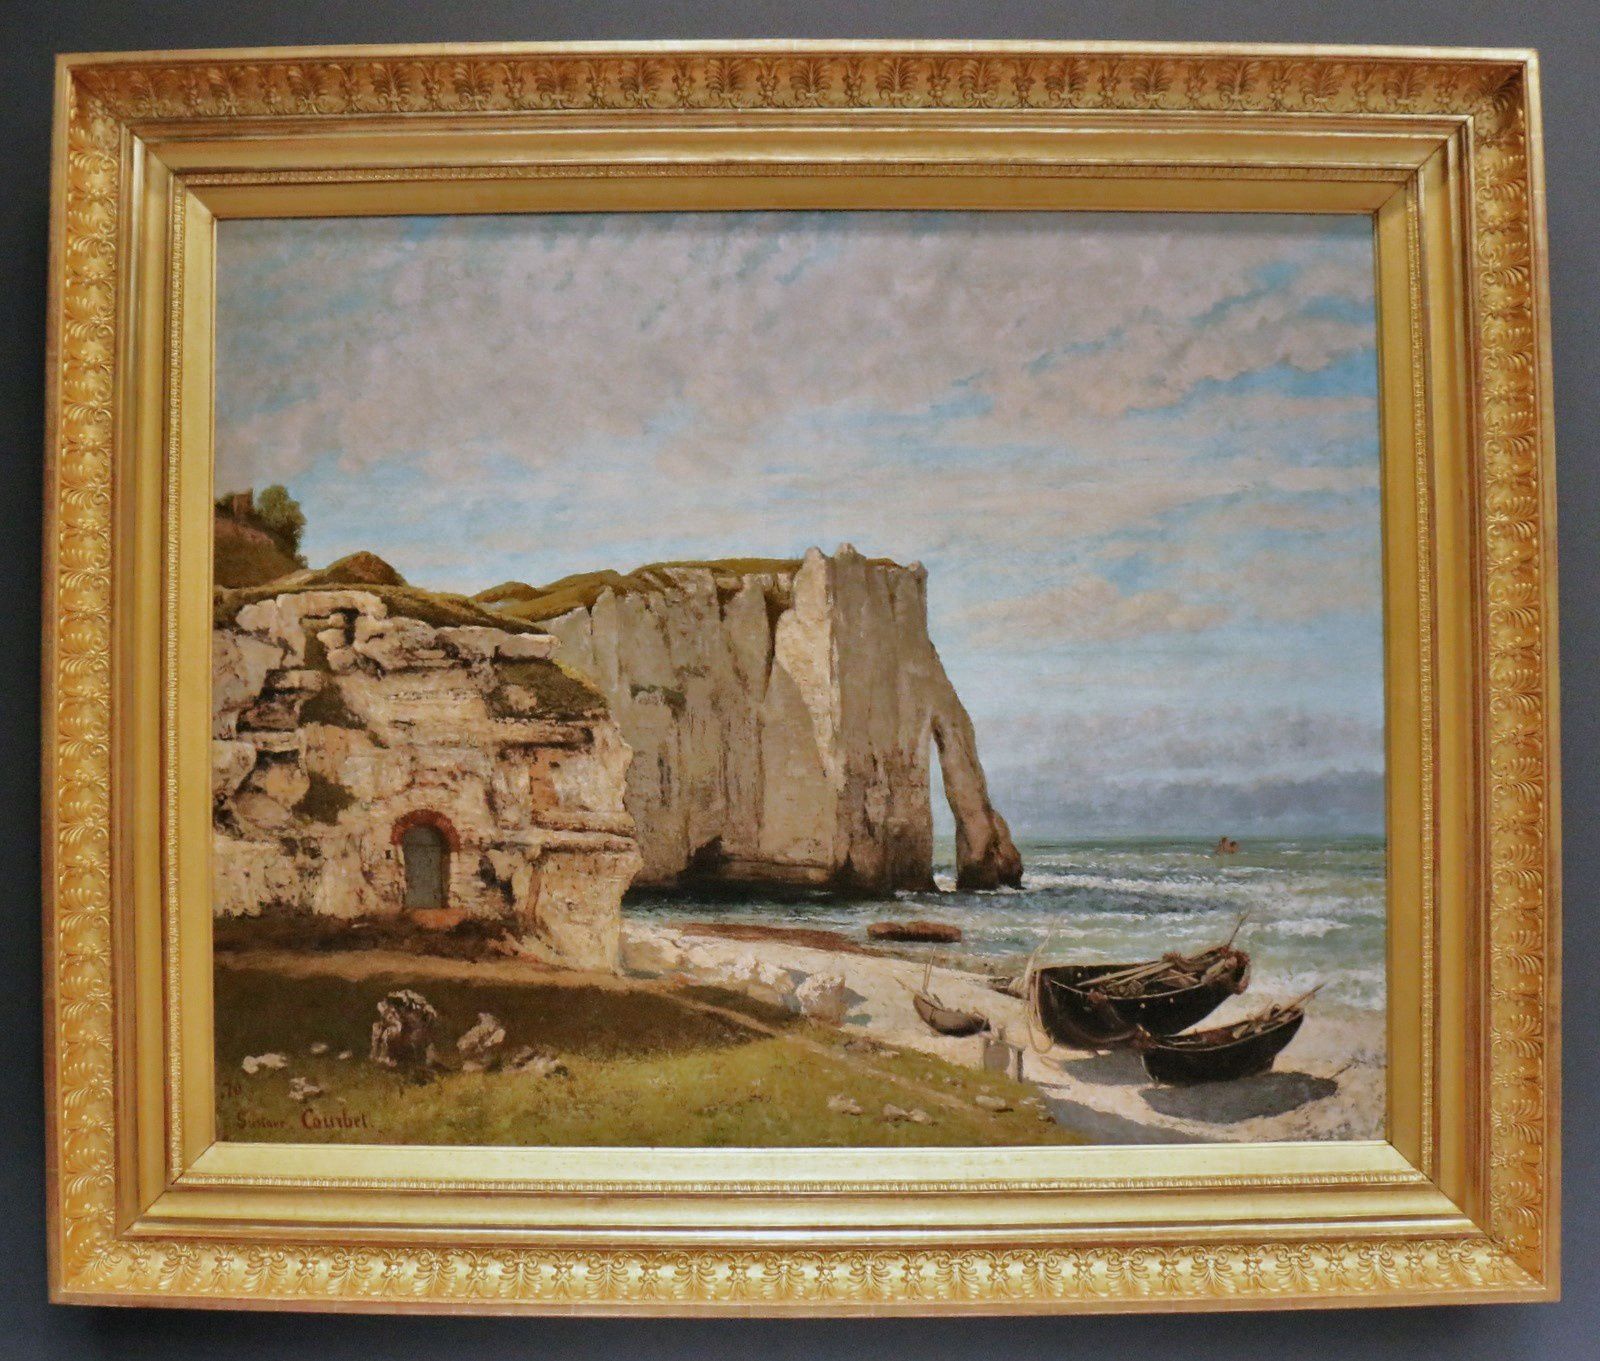 La falaise d'Etretat après l'orage, huile sur toie de Gustave Courbet